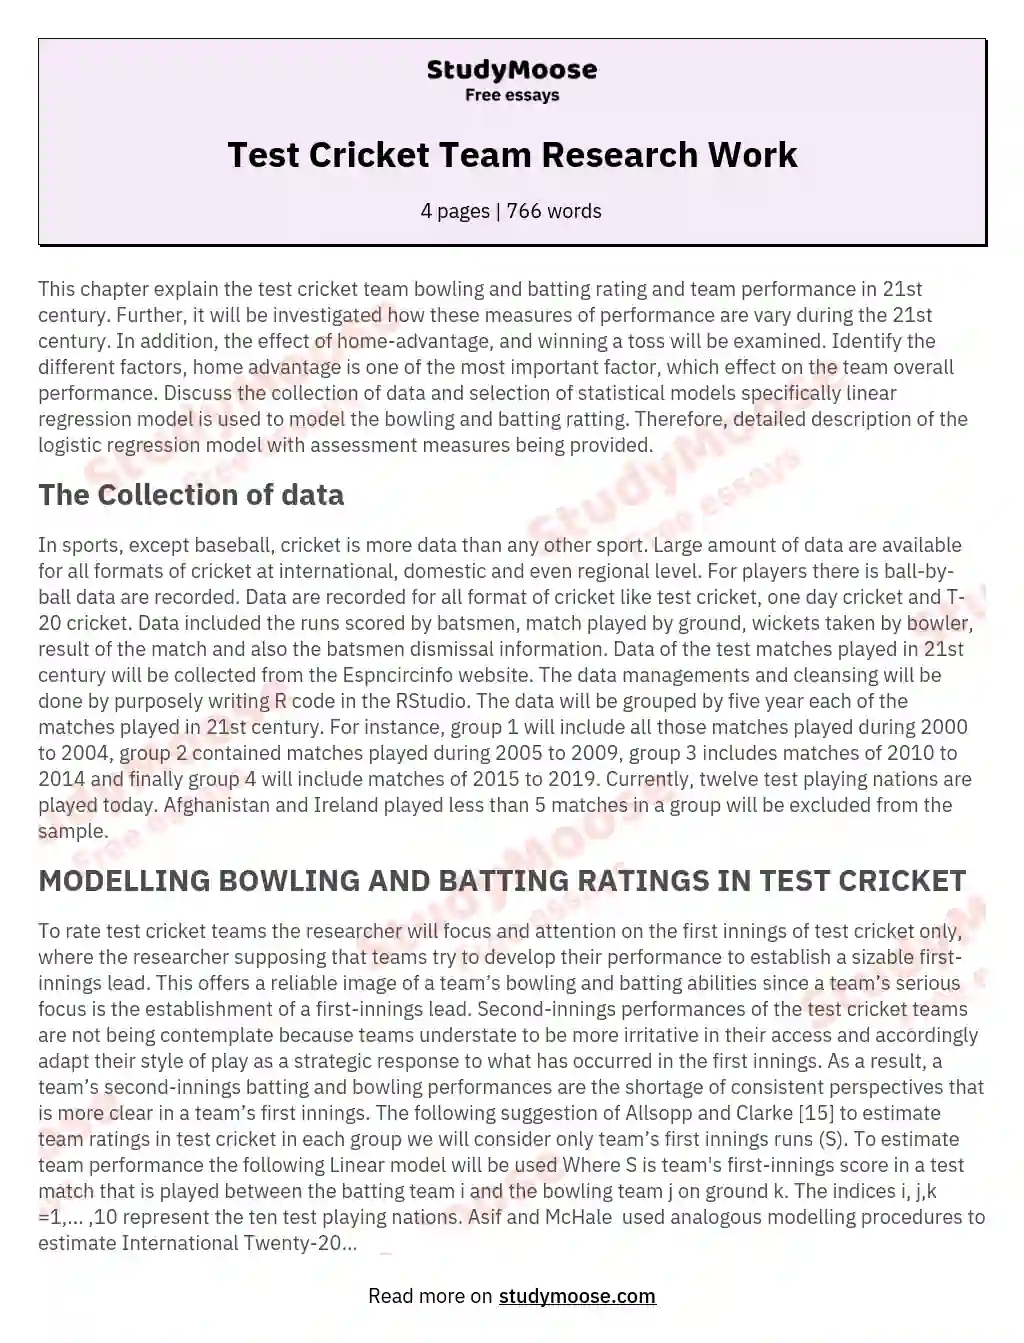 Test Cricket Team Research Work essay